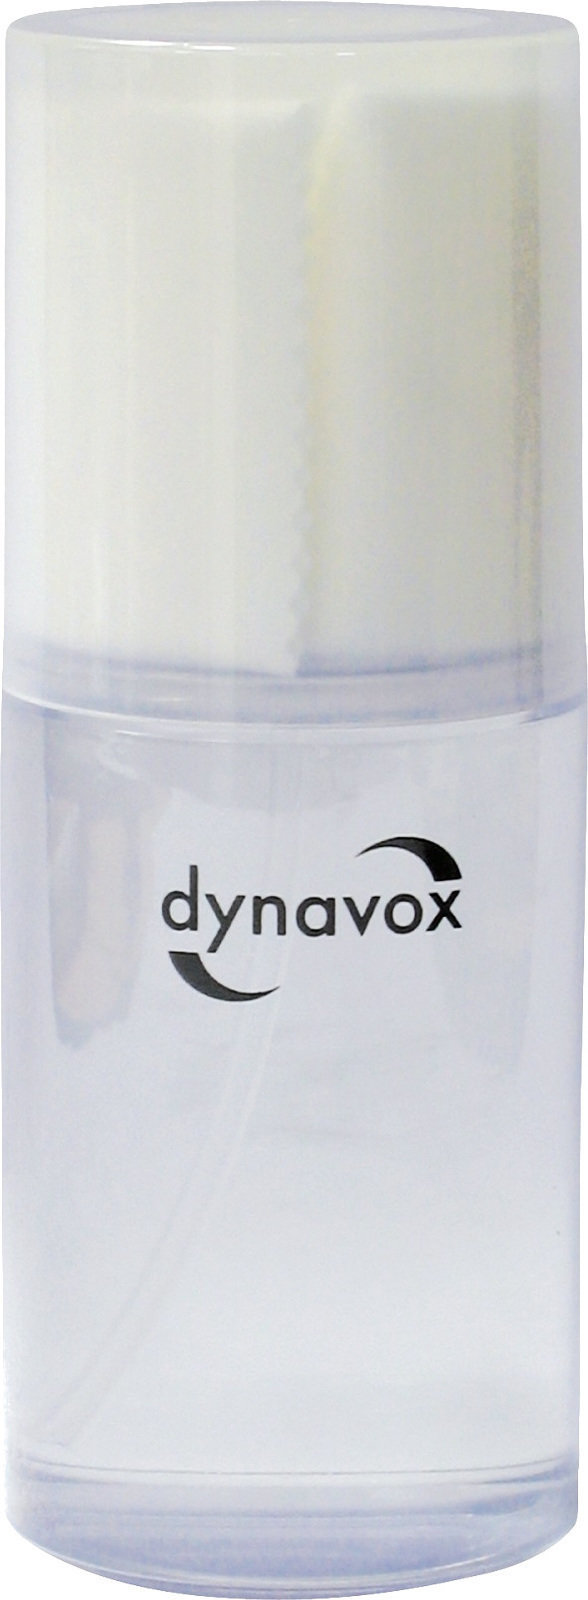 Reinigungsmittel für LP-Aufzeichnungen Dynavox Cleaning Fluid